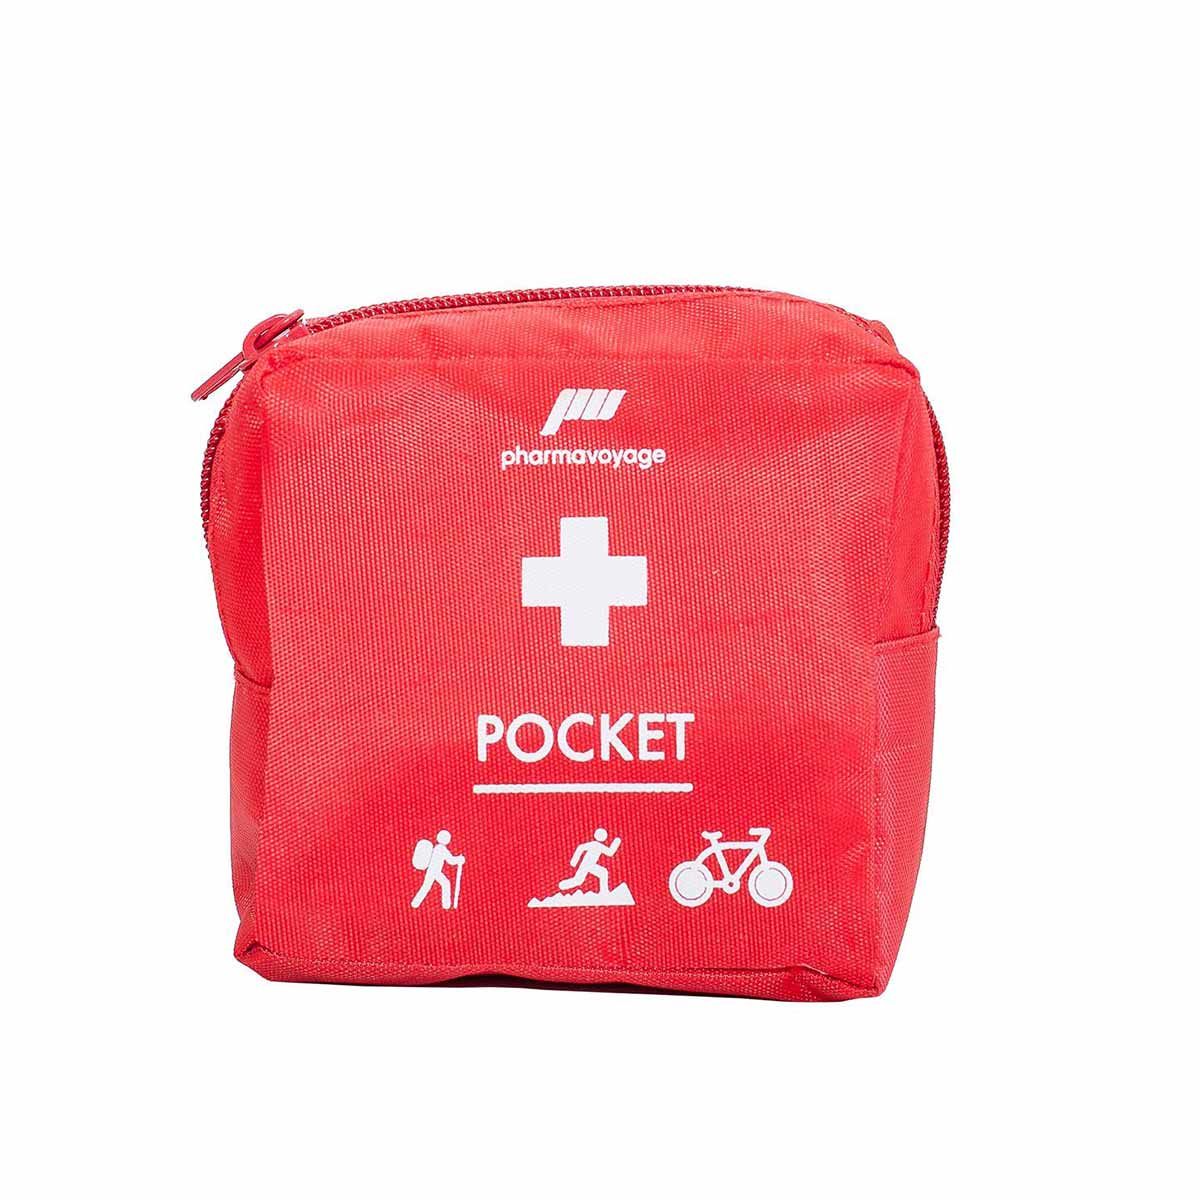 Trousse médicament Etuis médicament de poche Pocket en cuir Etuis porte clés  Poche amovible rangement Petit étuis de voyage